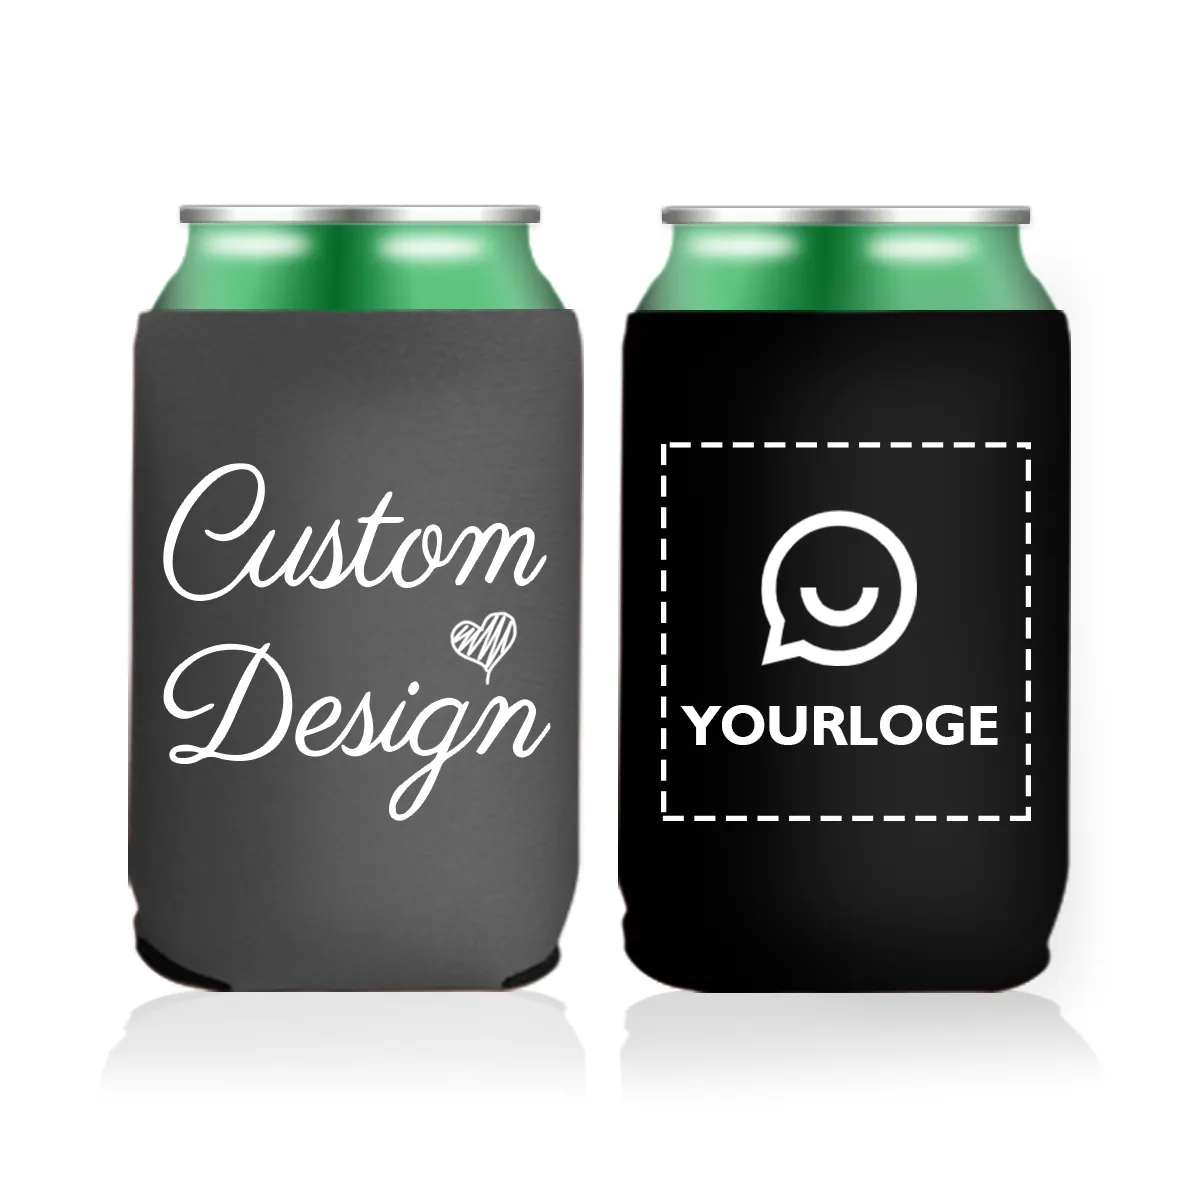 Personalizado Neoprene Stubby Holder Beer Can Cover com logotipo personalizado Sublimação personalizada Custom Can Cooler